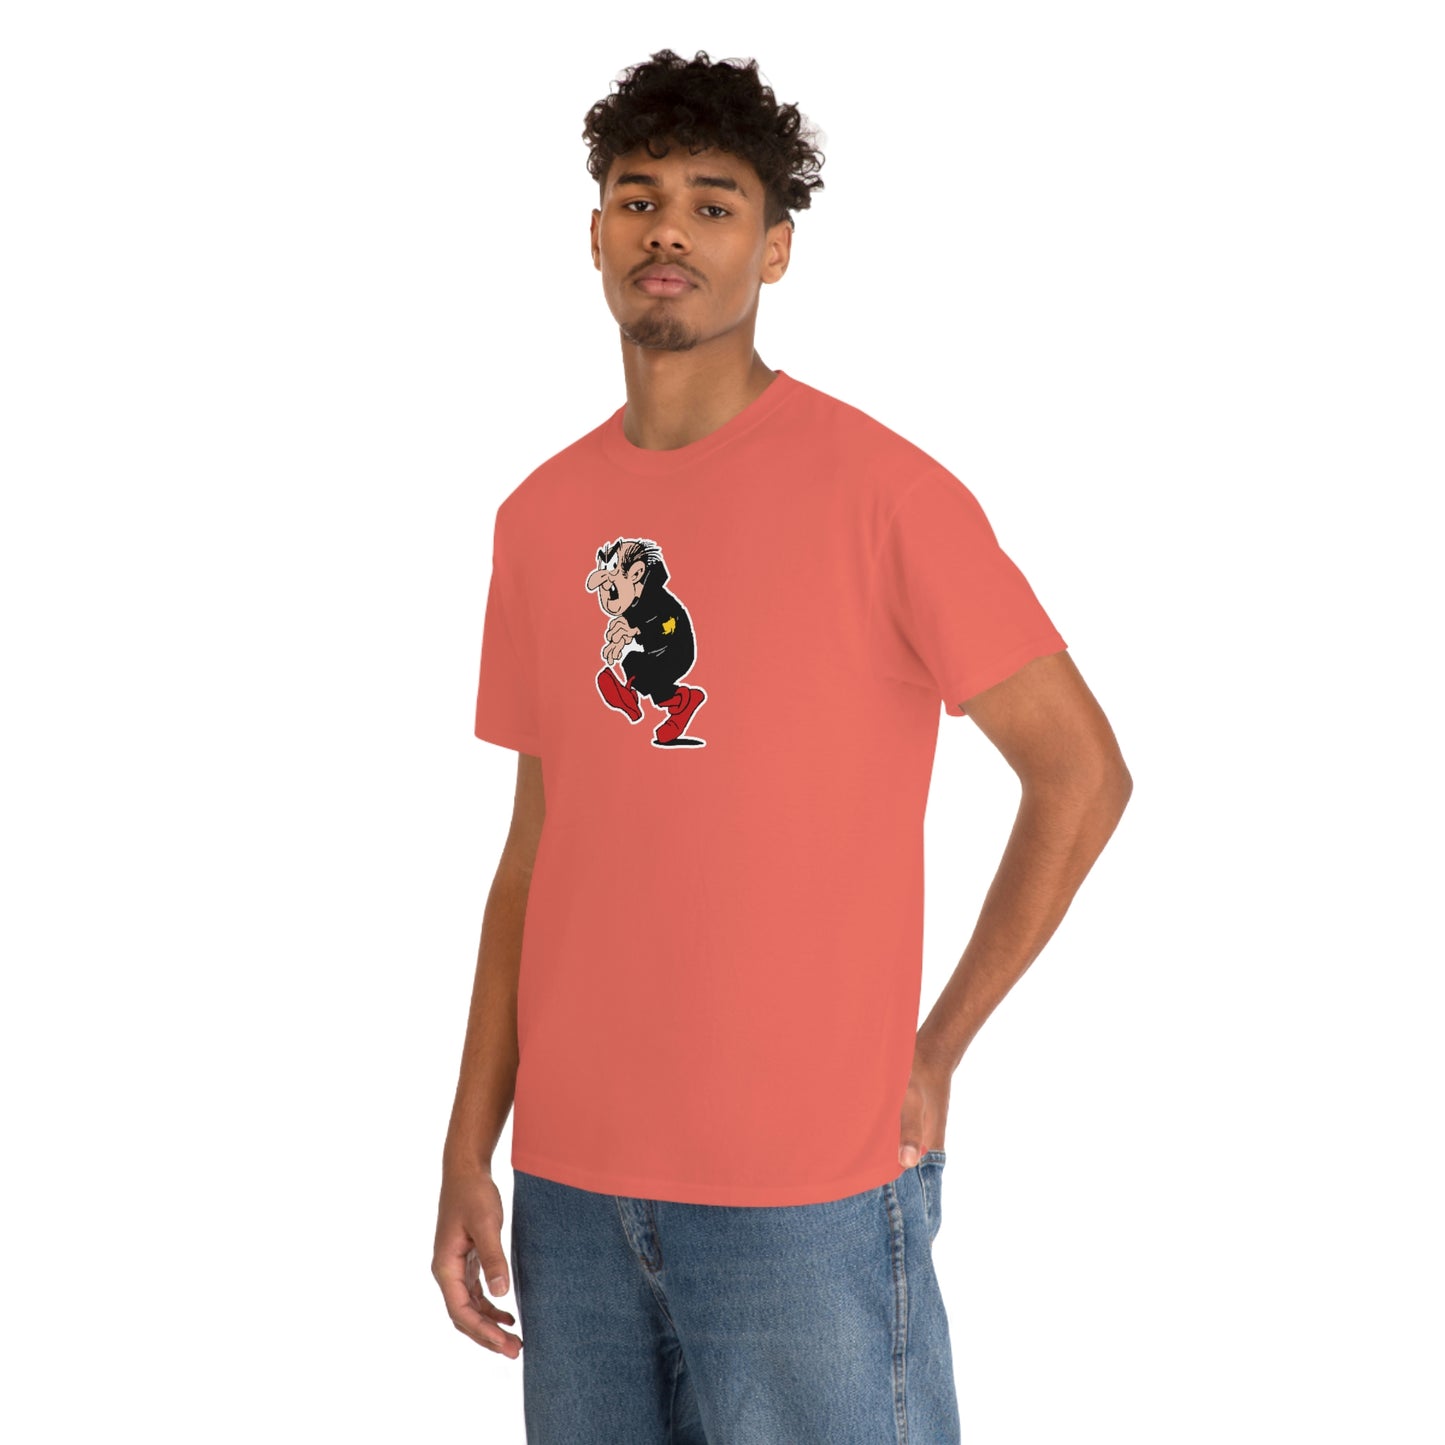 Gargamel T-Shirt